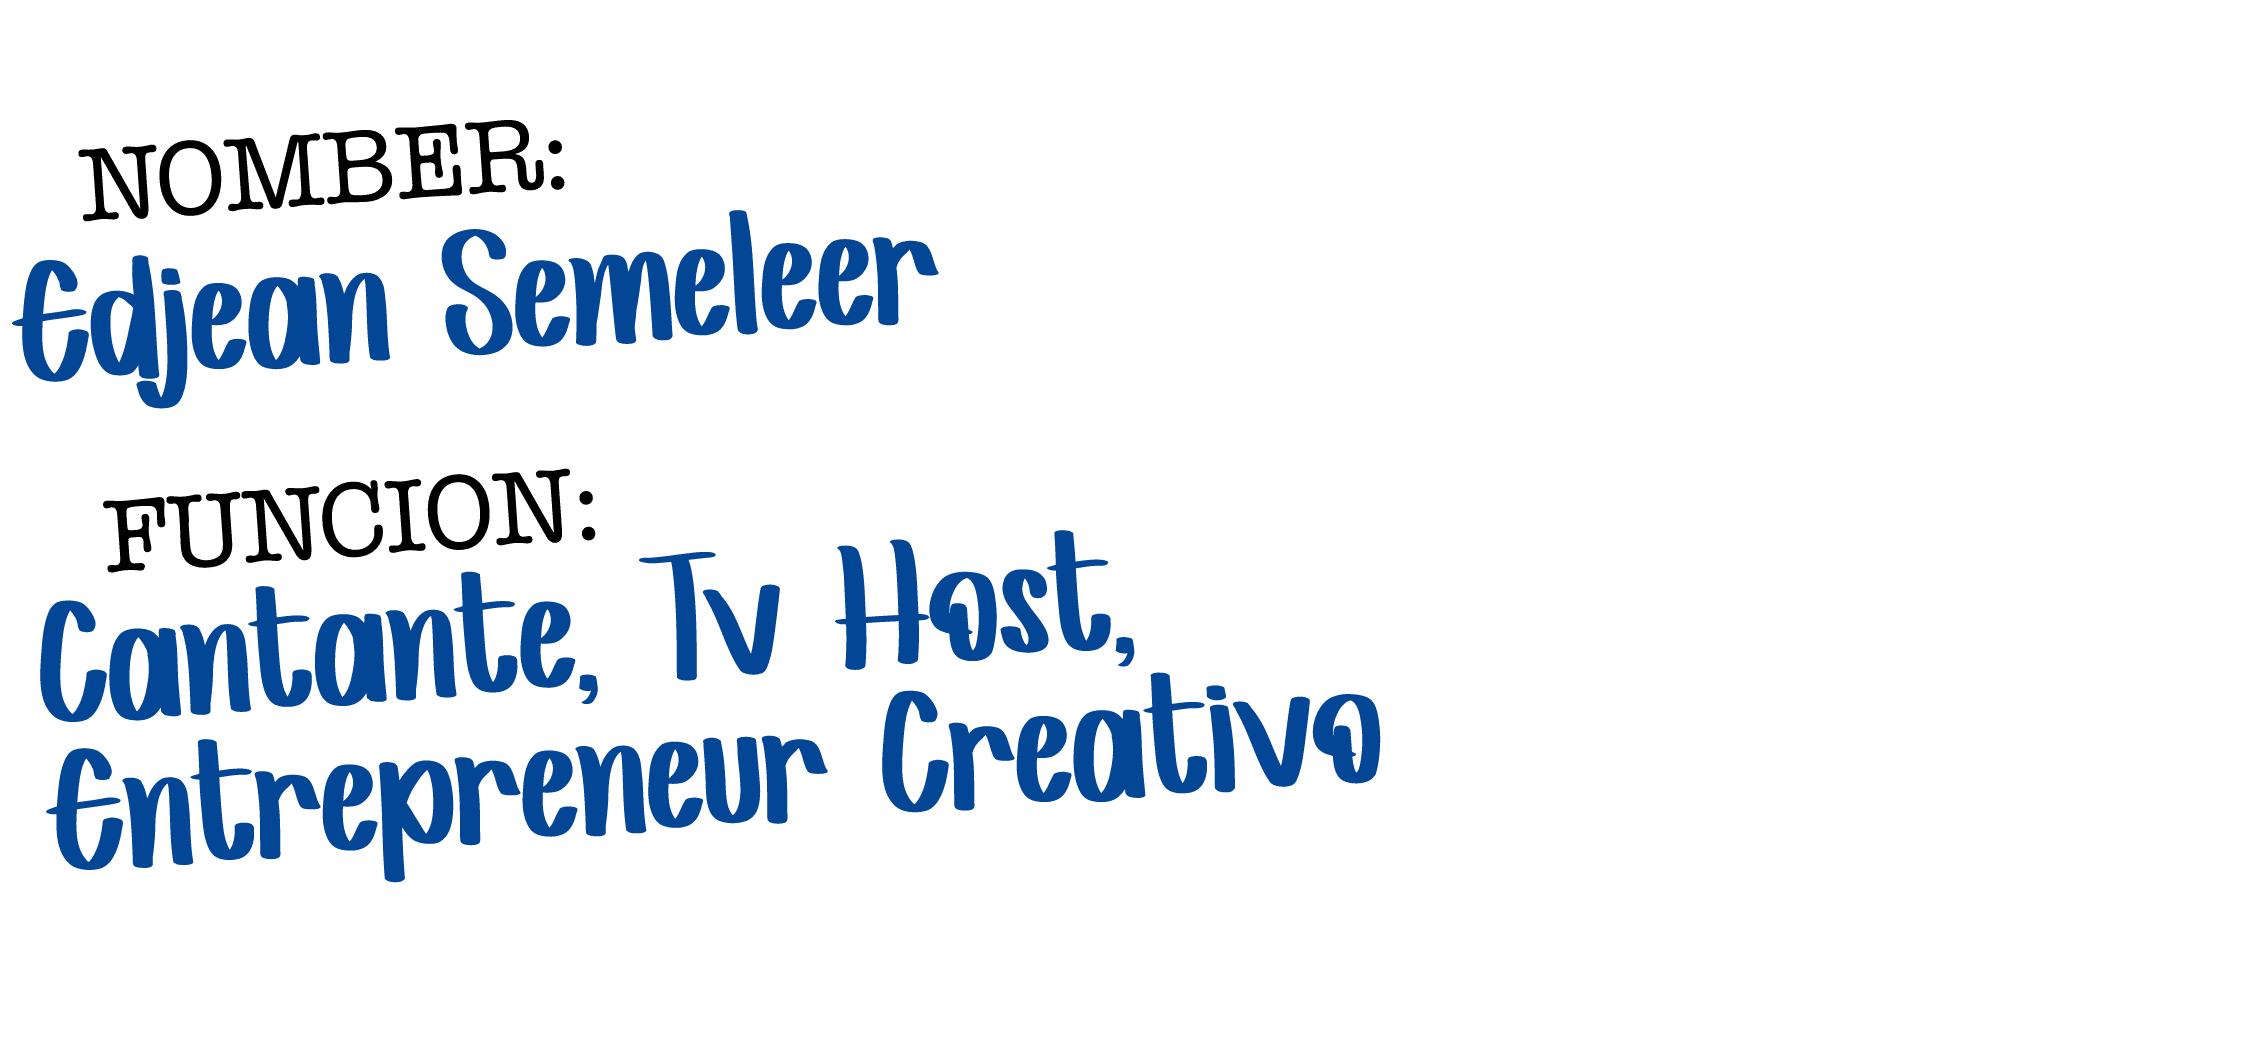  NOMBER: Edjean Semeleer FUNCION: Cantante, Tv Host, Entrepreneur Creativo